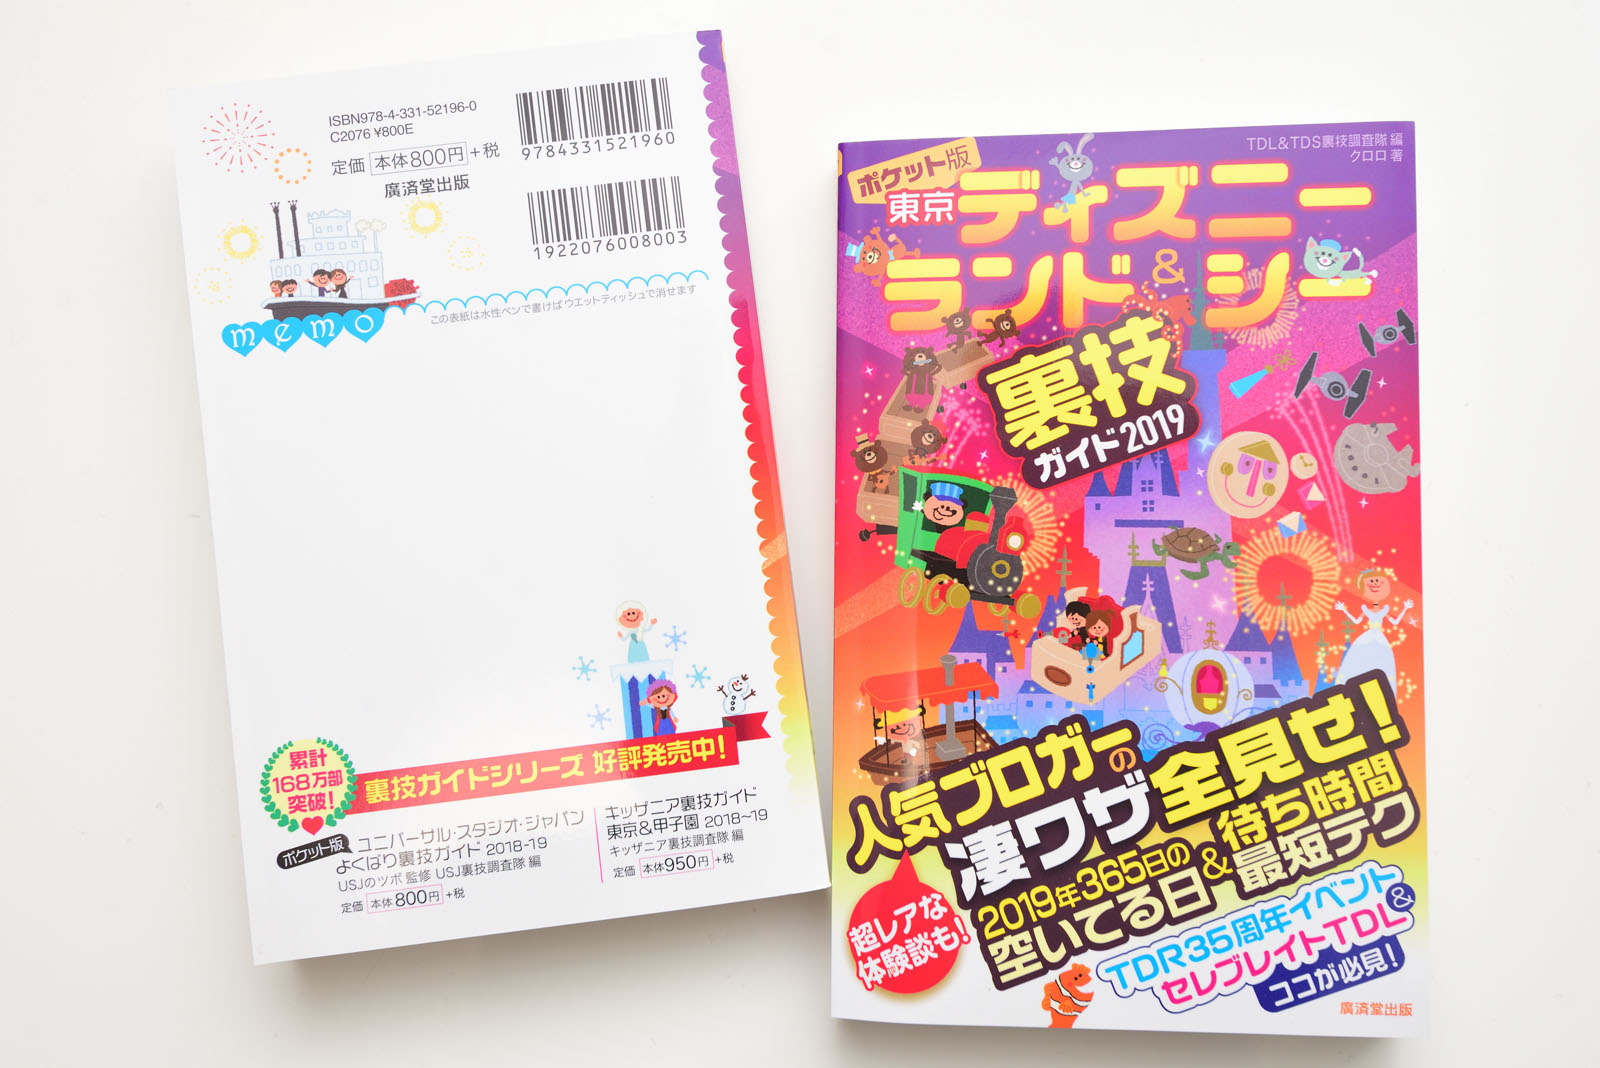 執筆ガイド本の最新版 ポケット版 東京ディズニーランド シー裏技ガイド19 が11月29日発売 Disney Colors Blog